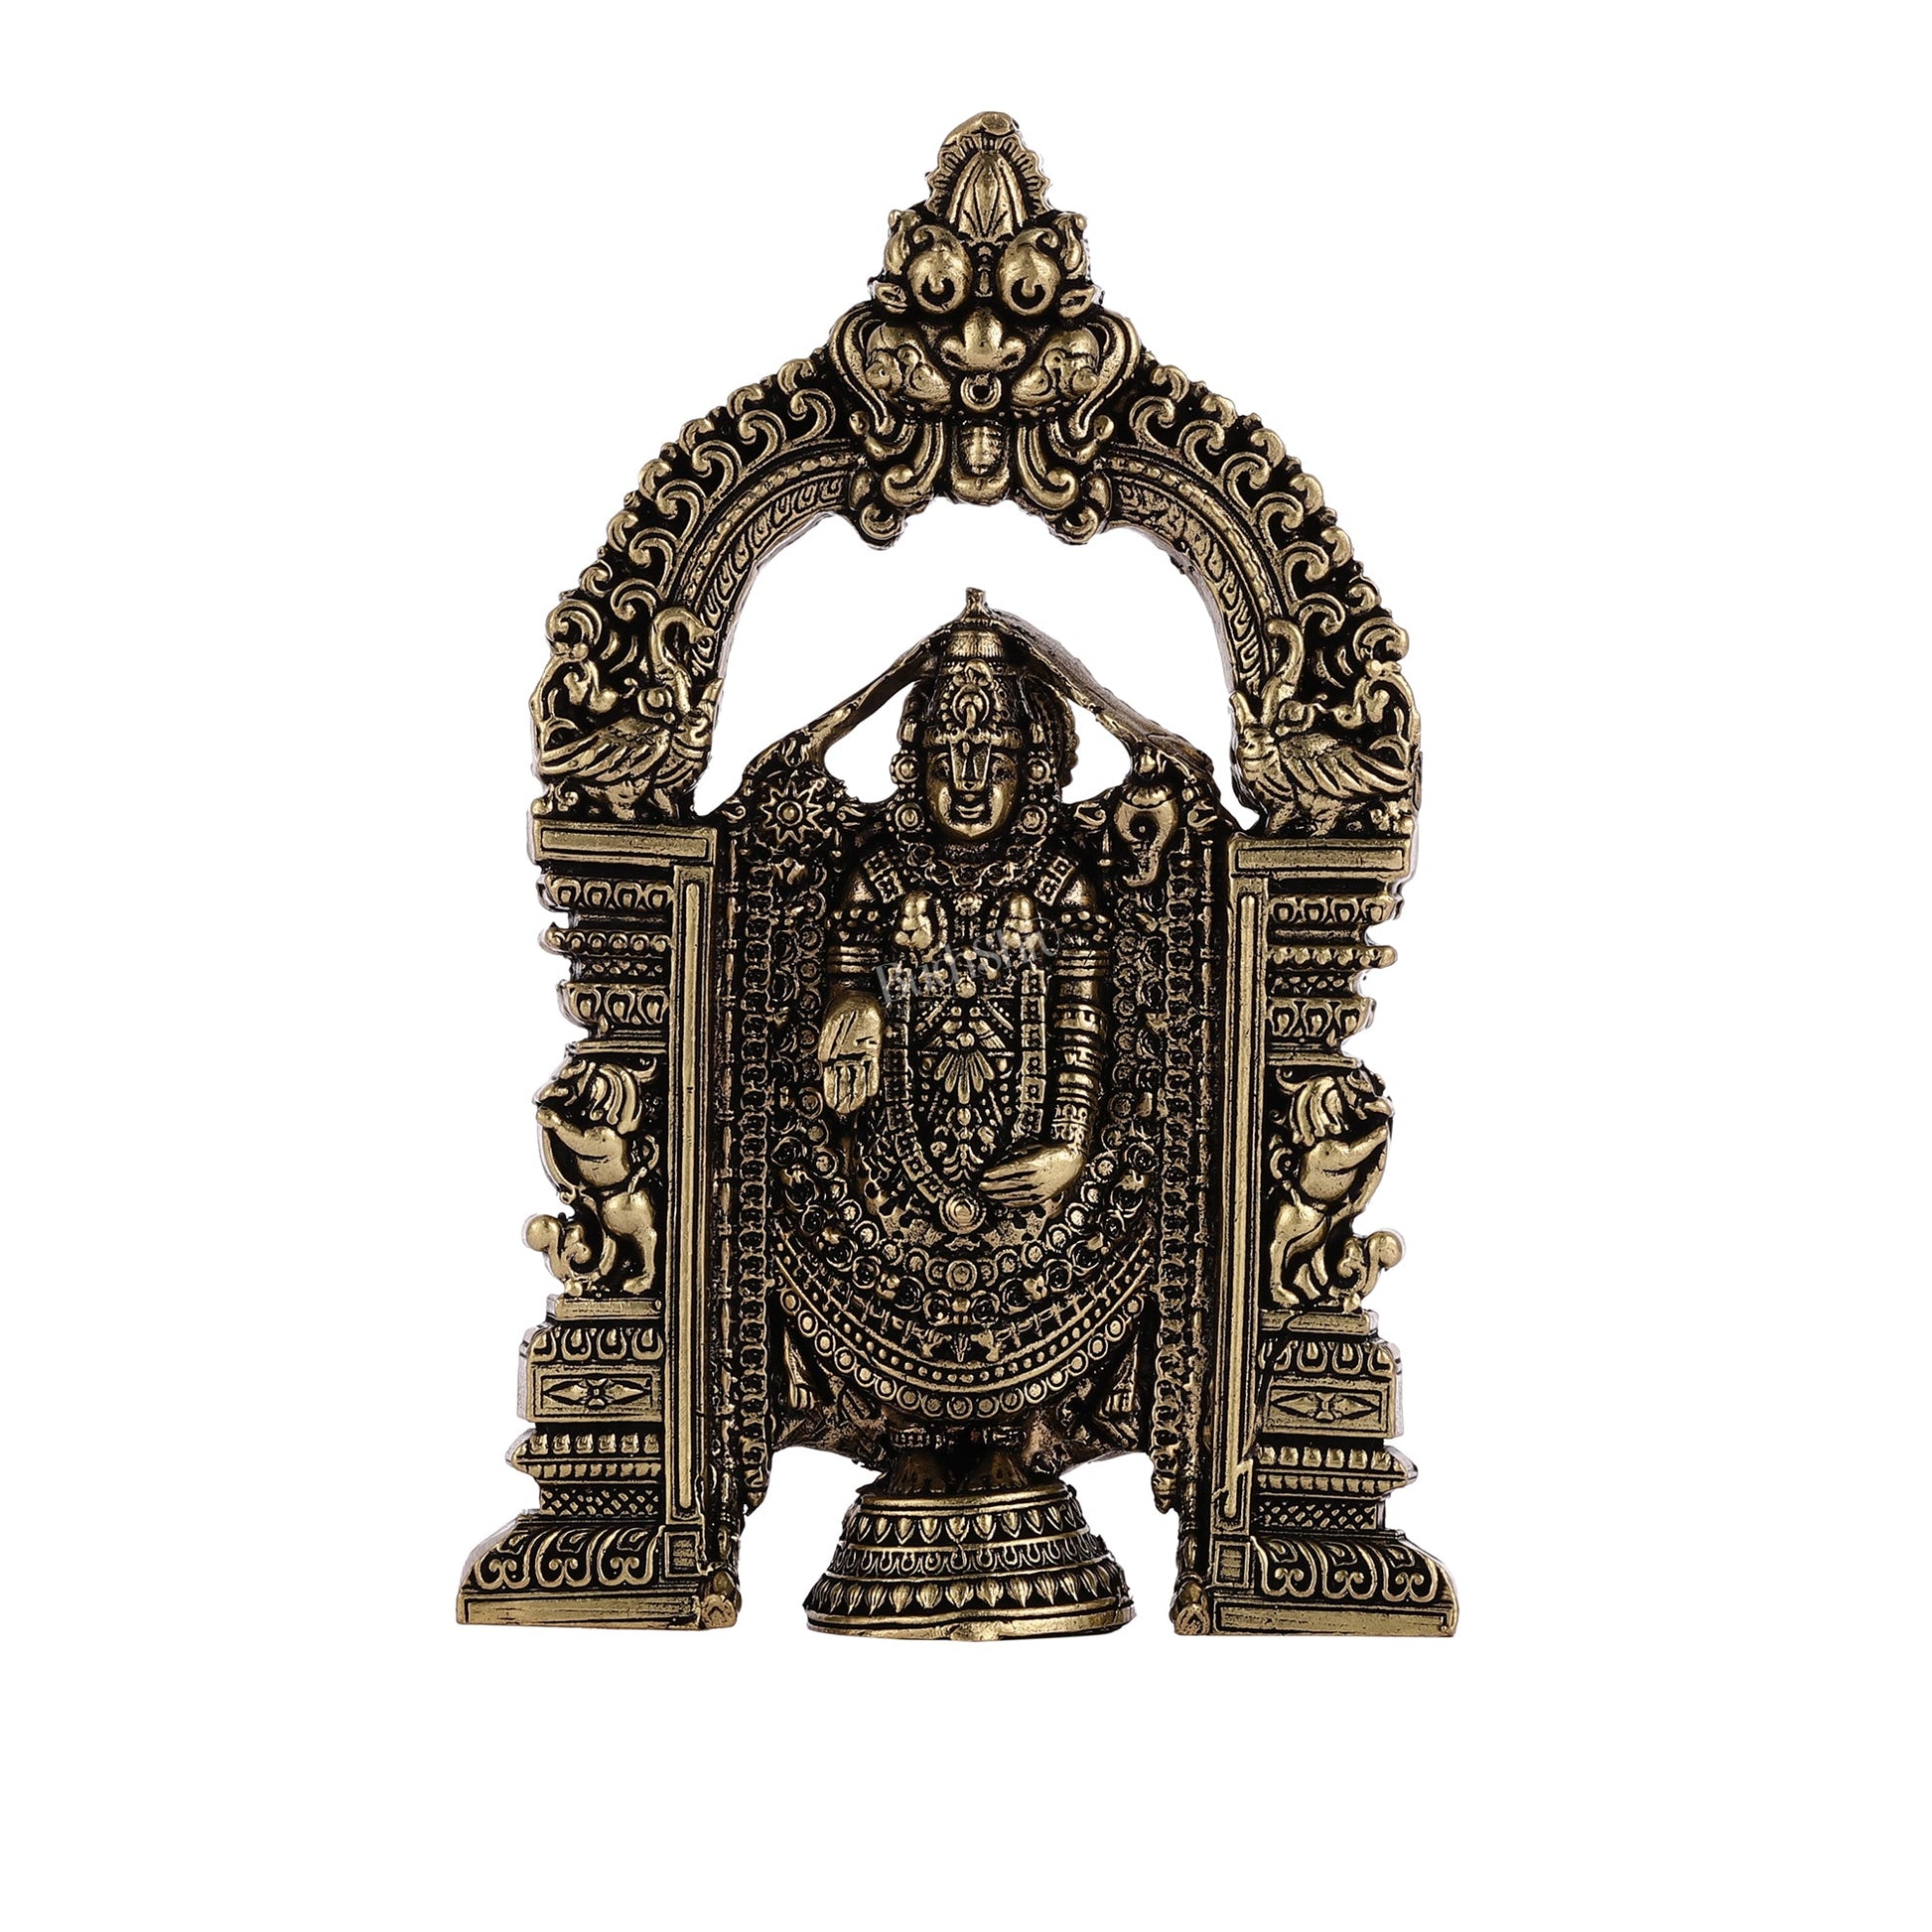 Superfine Brass Tirupati Balaji Statue - 6" - Budhshiv.com